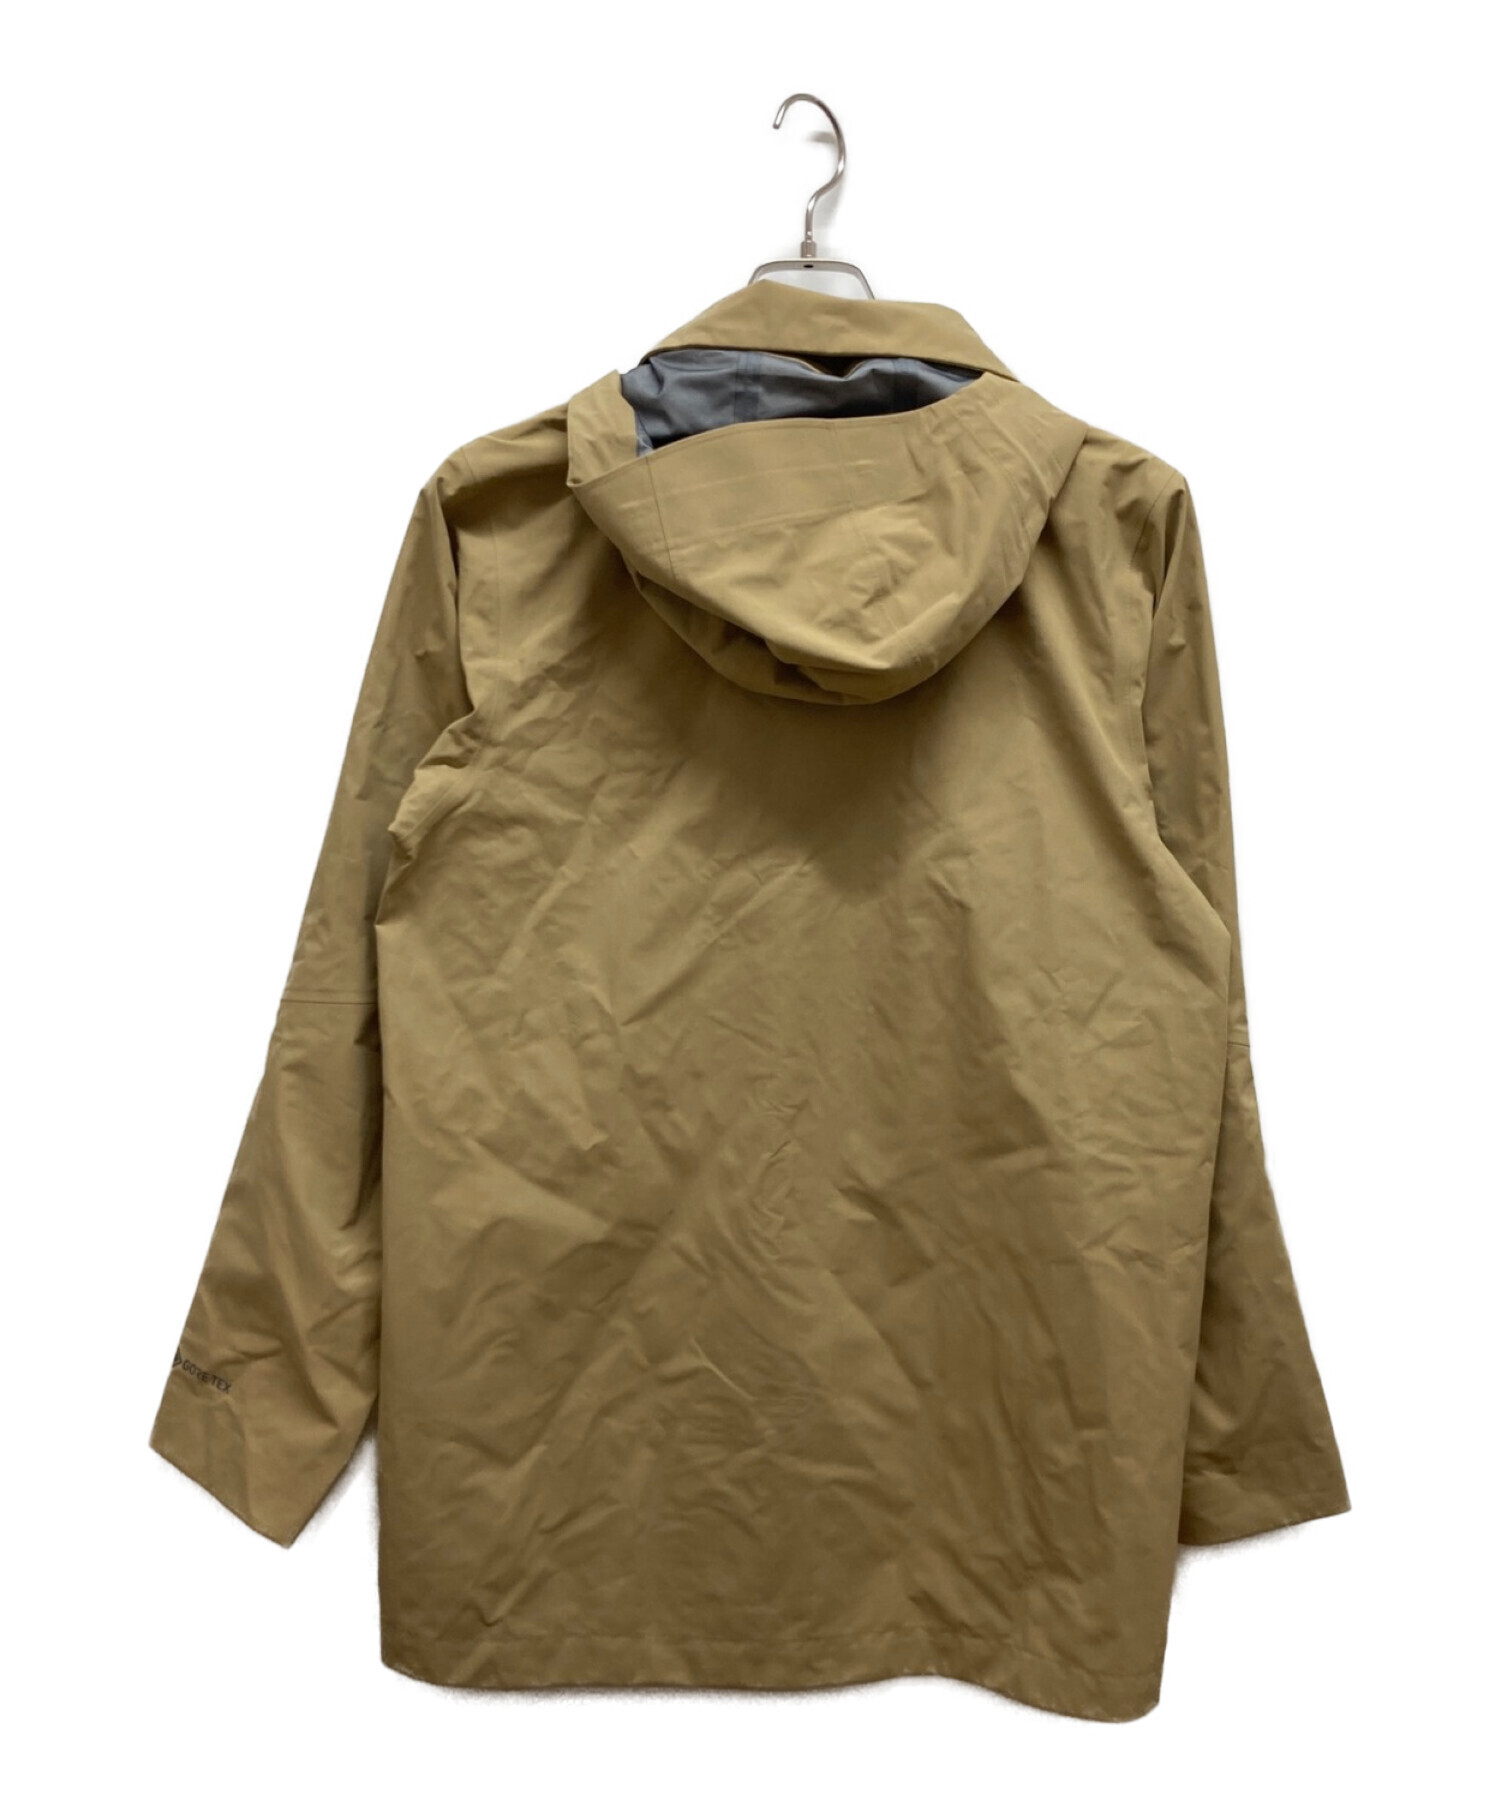 XSサイズ patagonia パタゴニア ゴアテックス ストームジャケット